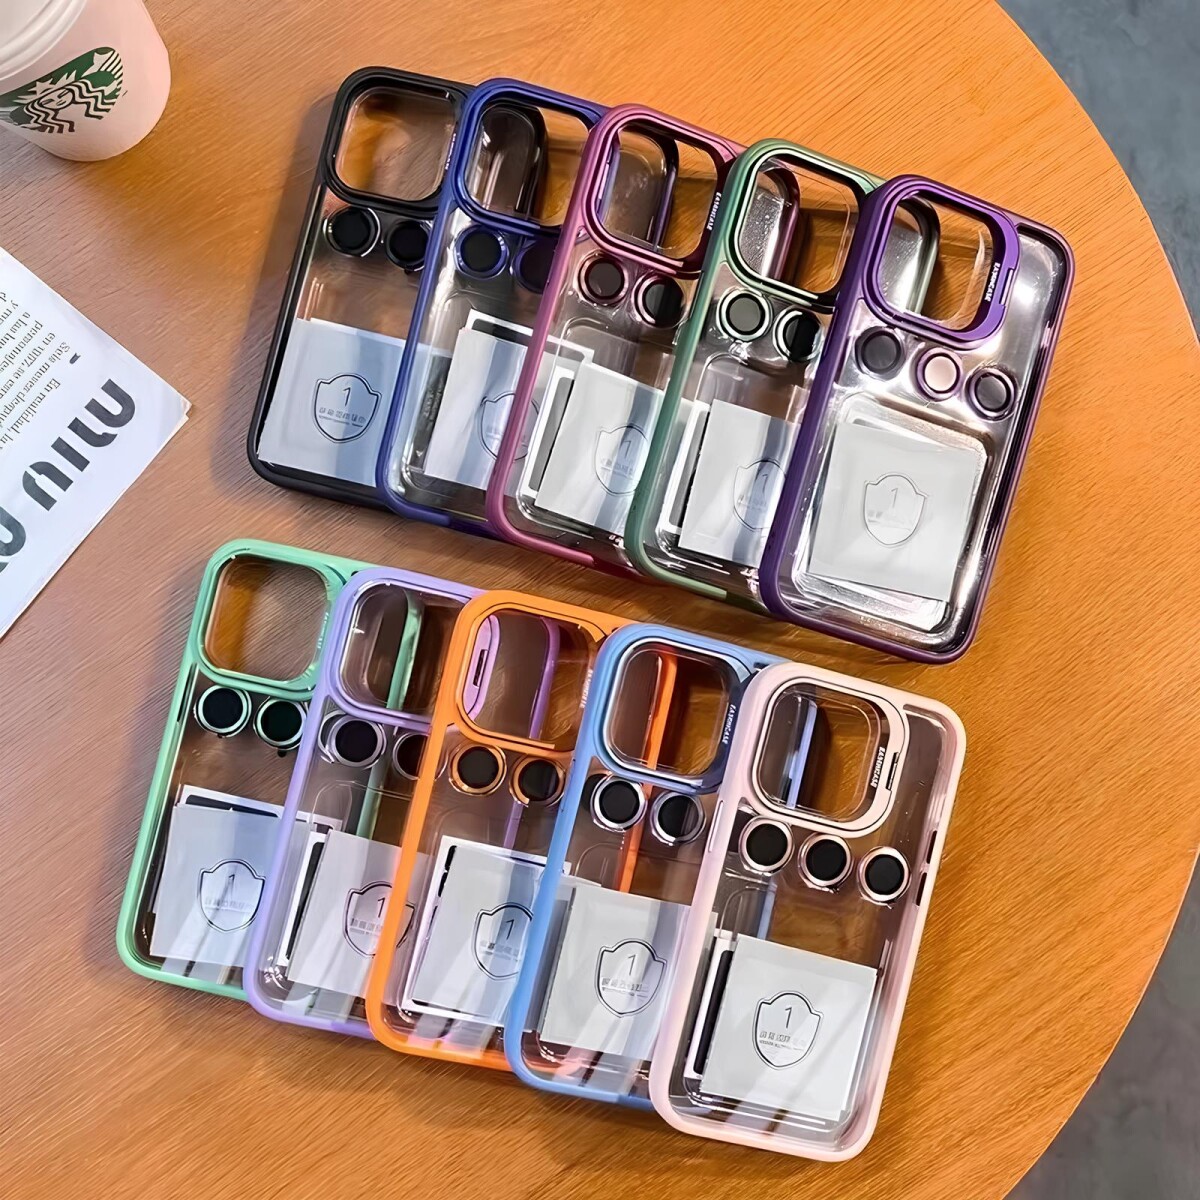 Case Transparente con Borde de Color y Protector de Lente Iphone 11 Green